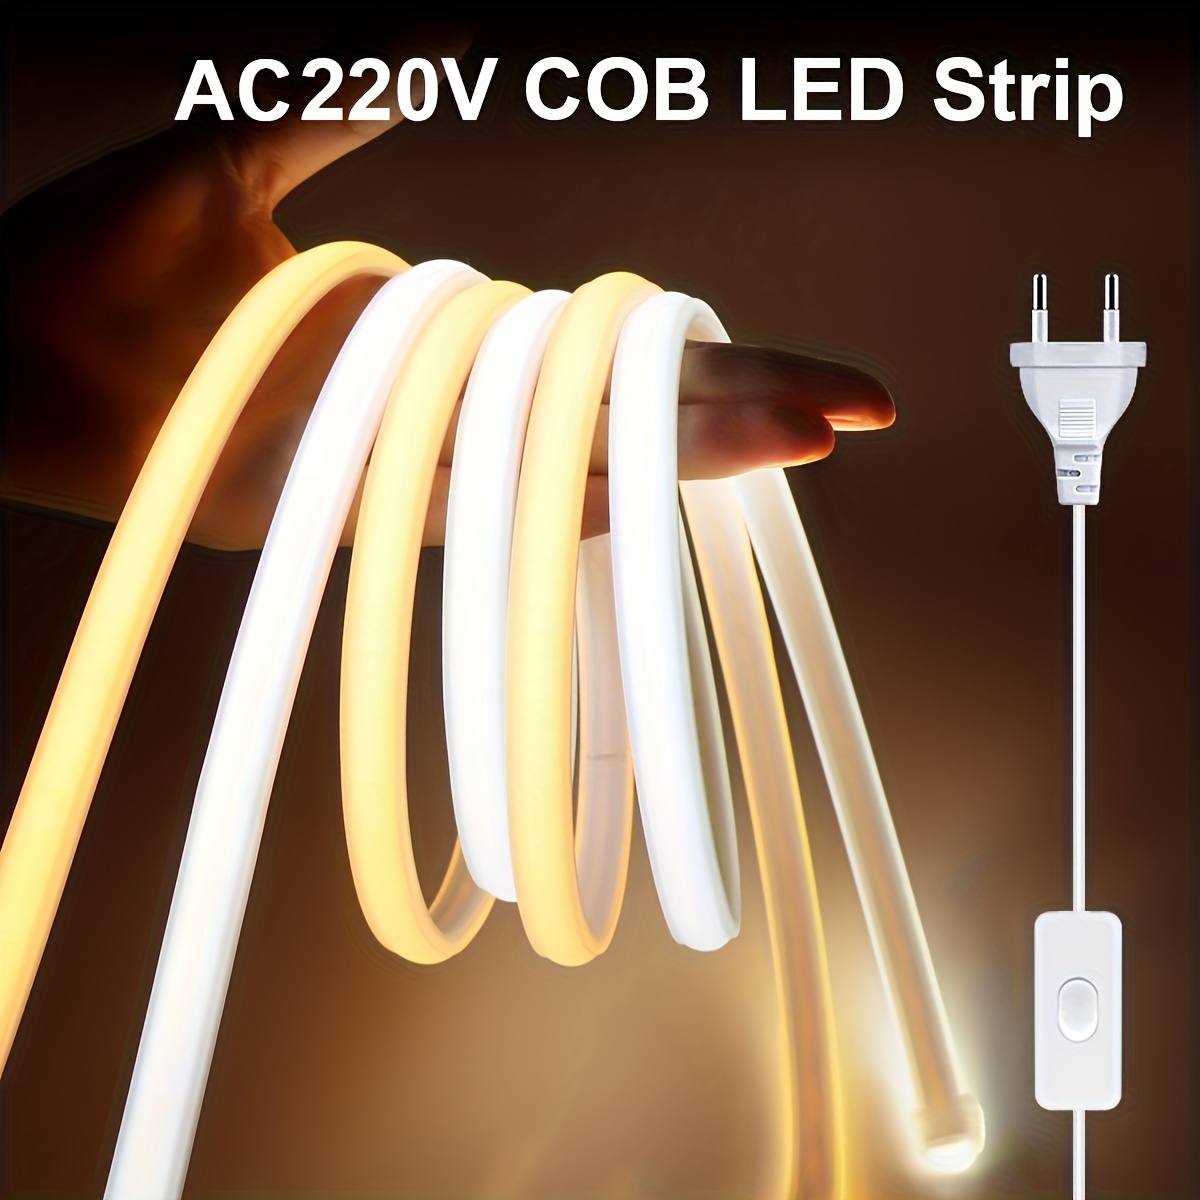 

Ruban LED flexible COB 220V, 288 LED/m étanche, 12W/m, lumières de bande LED, 1m découpable pour jardin extérieur, cuisine, chambre, accessoires gratuits et prise EU avec interrupteur de 1,2m